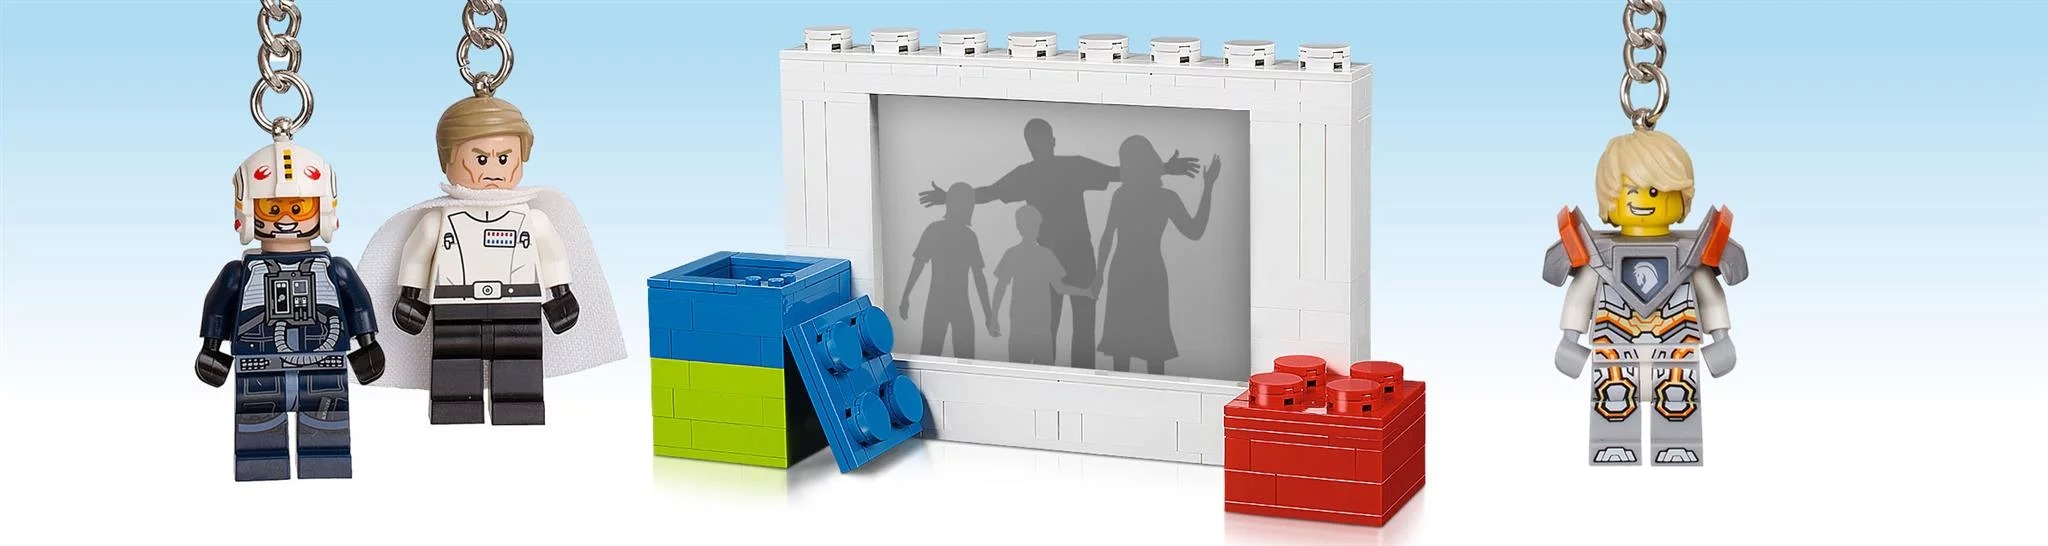 Рекламная акция Лего (LEGO) «Подарок, который всегда с вами»